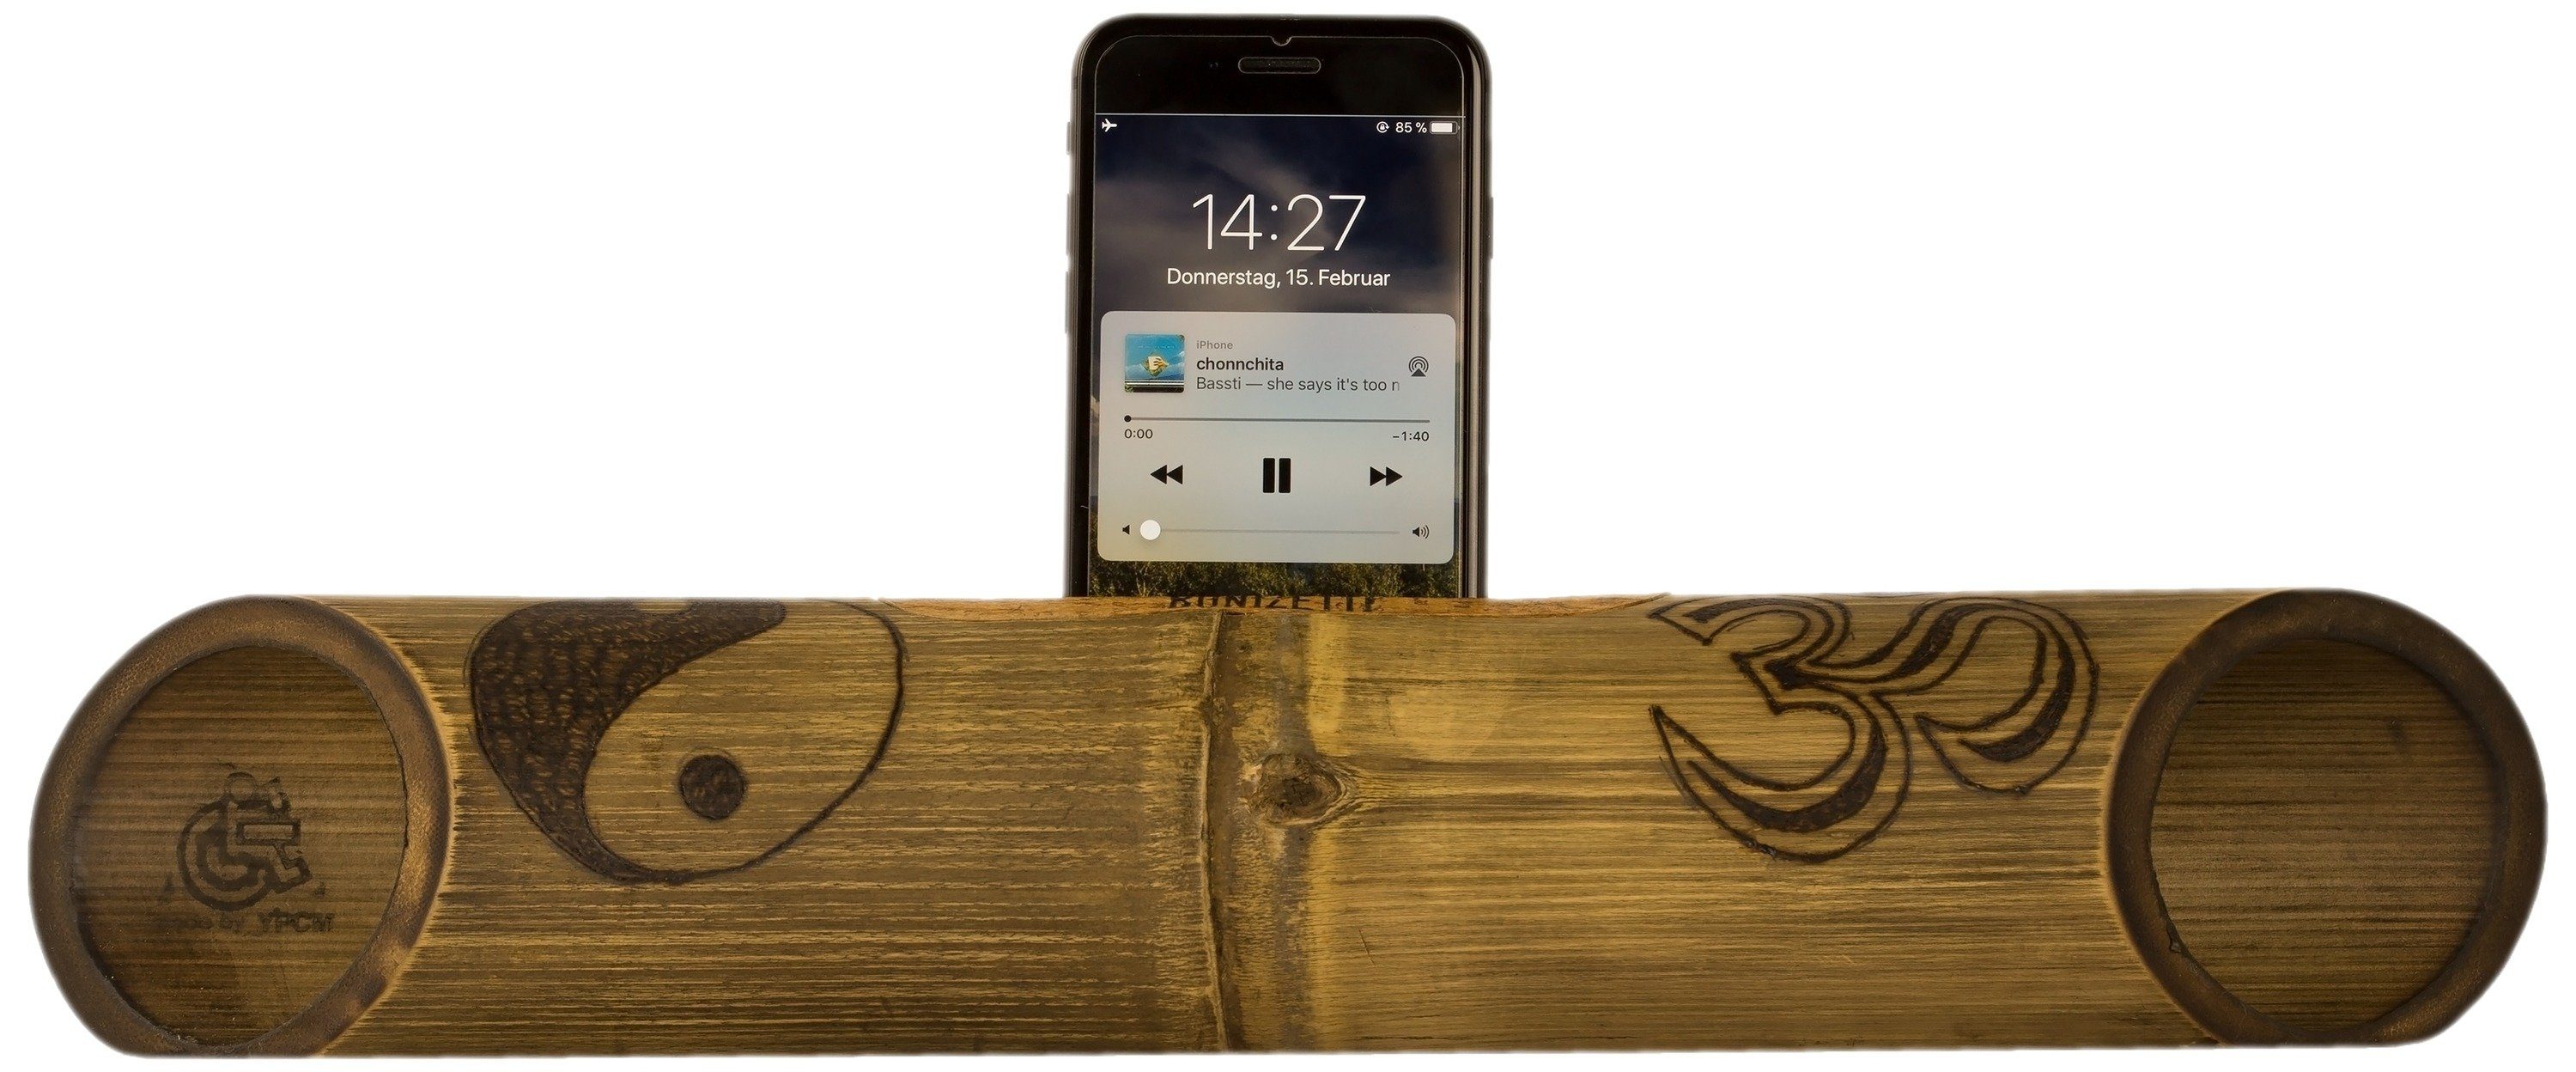 Lautsprecher Echt (Bambus-Lautsprecher Musikbox) Pyrografie Handy Braun Bonizetti Holz handgefertigt